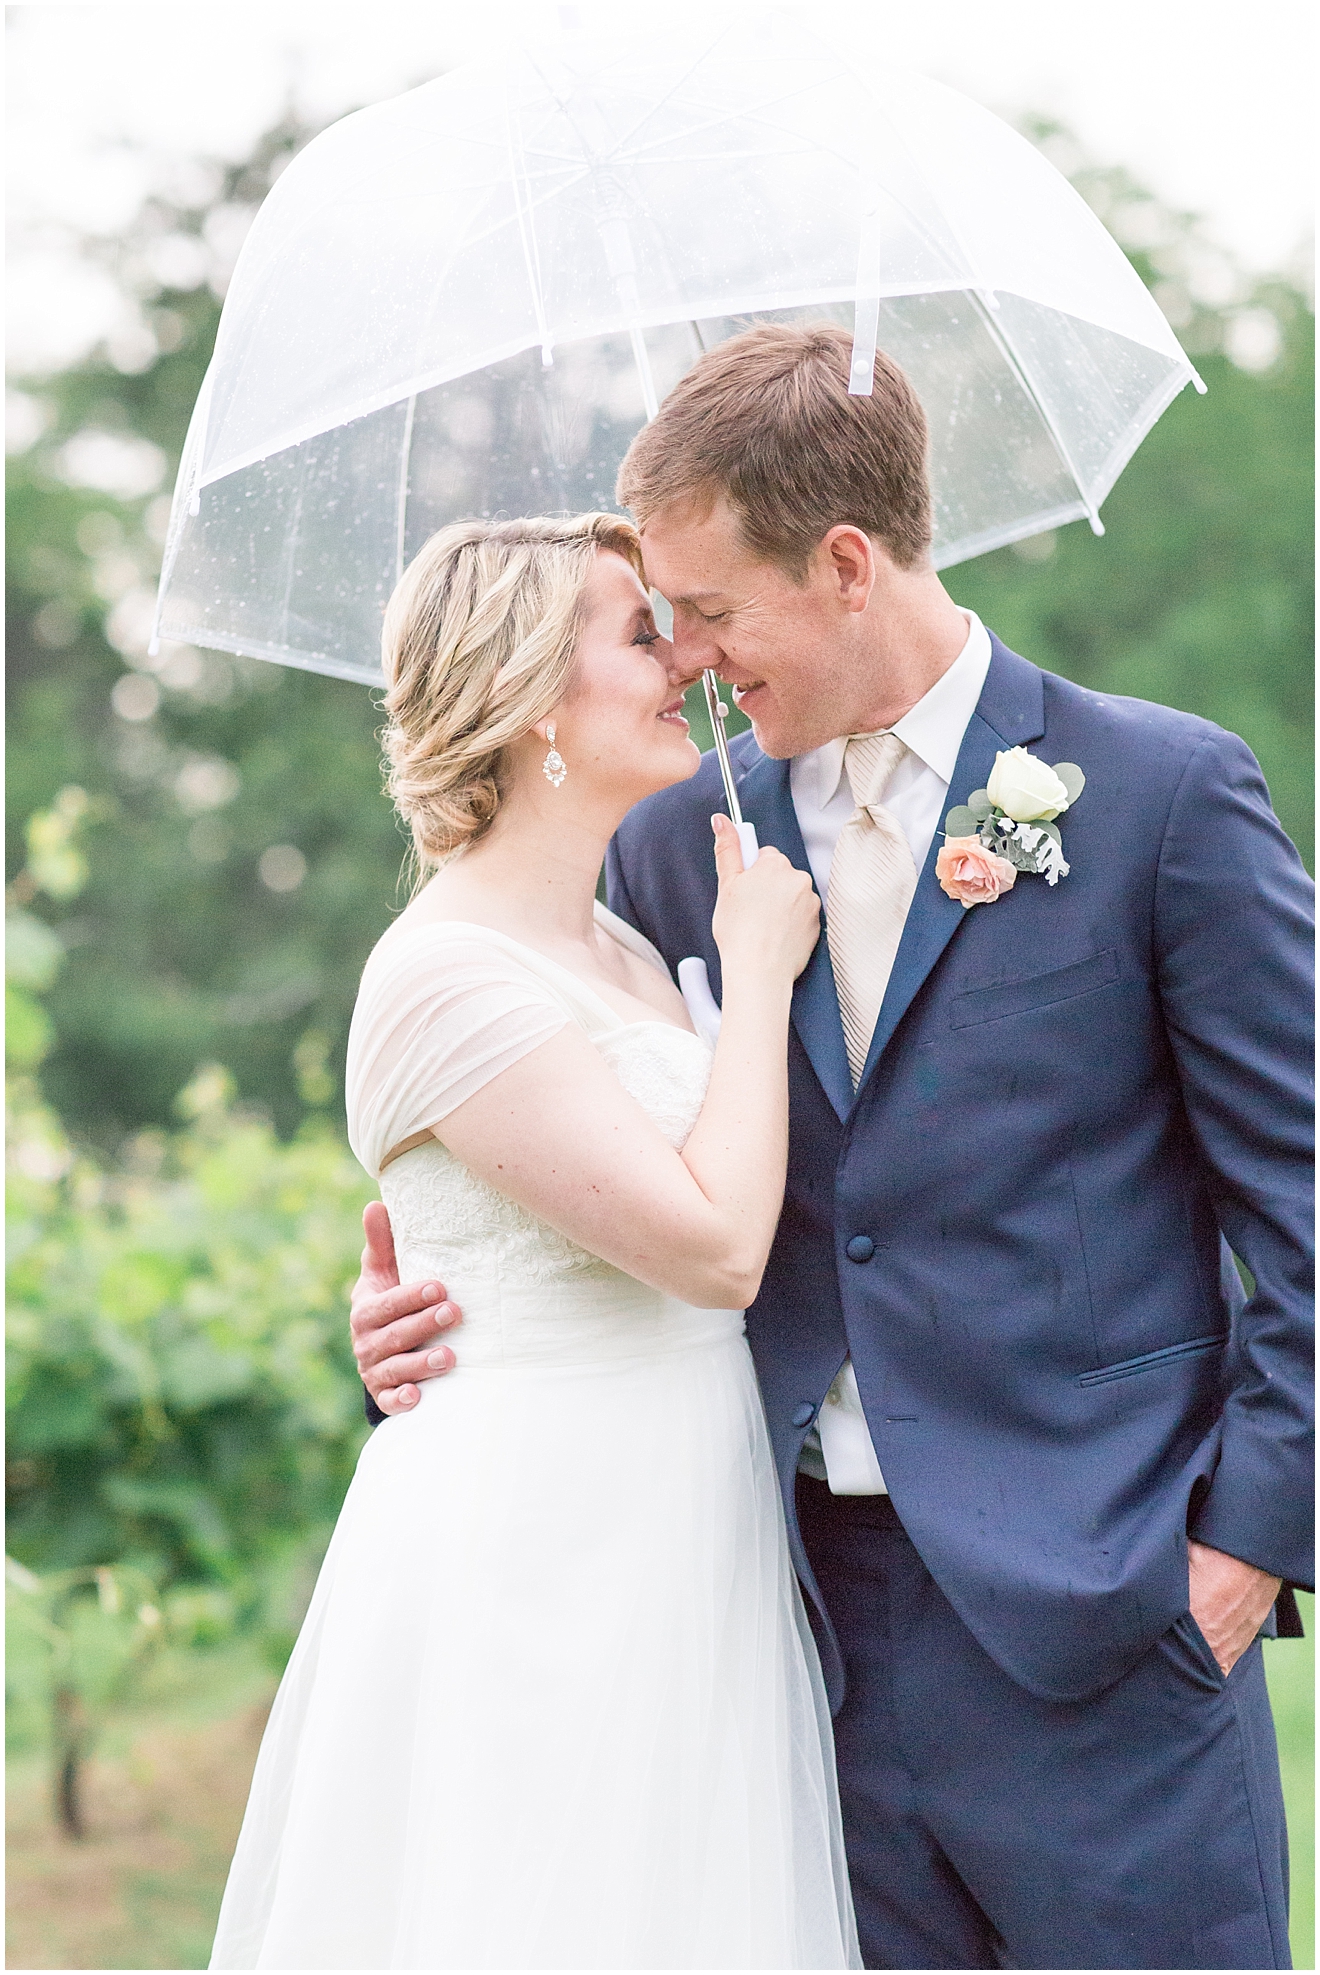 romantic-rainy-wedding-portraits